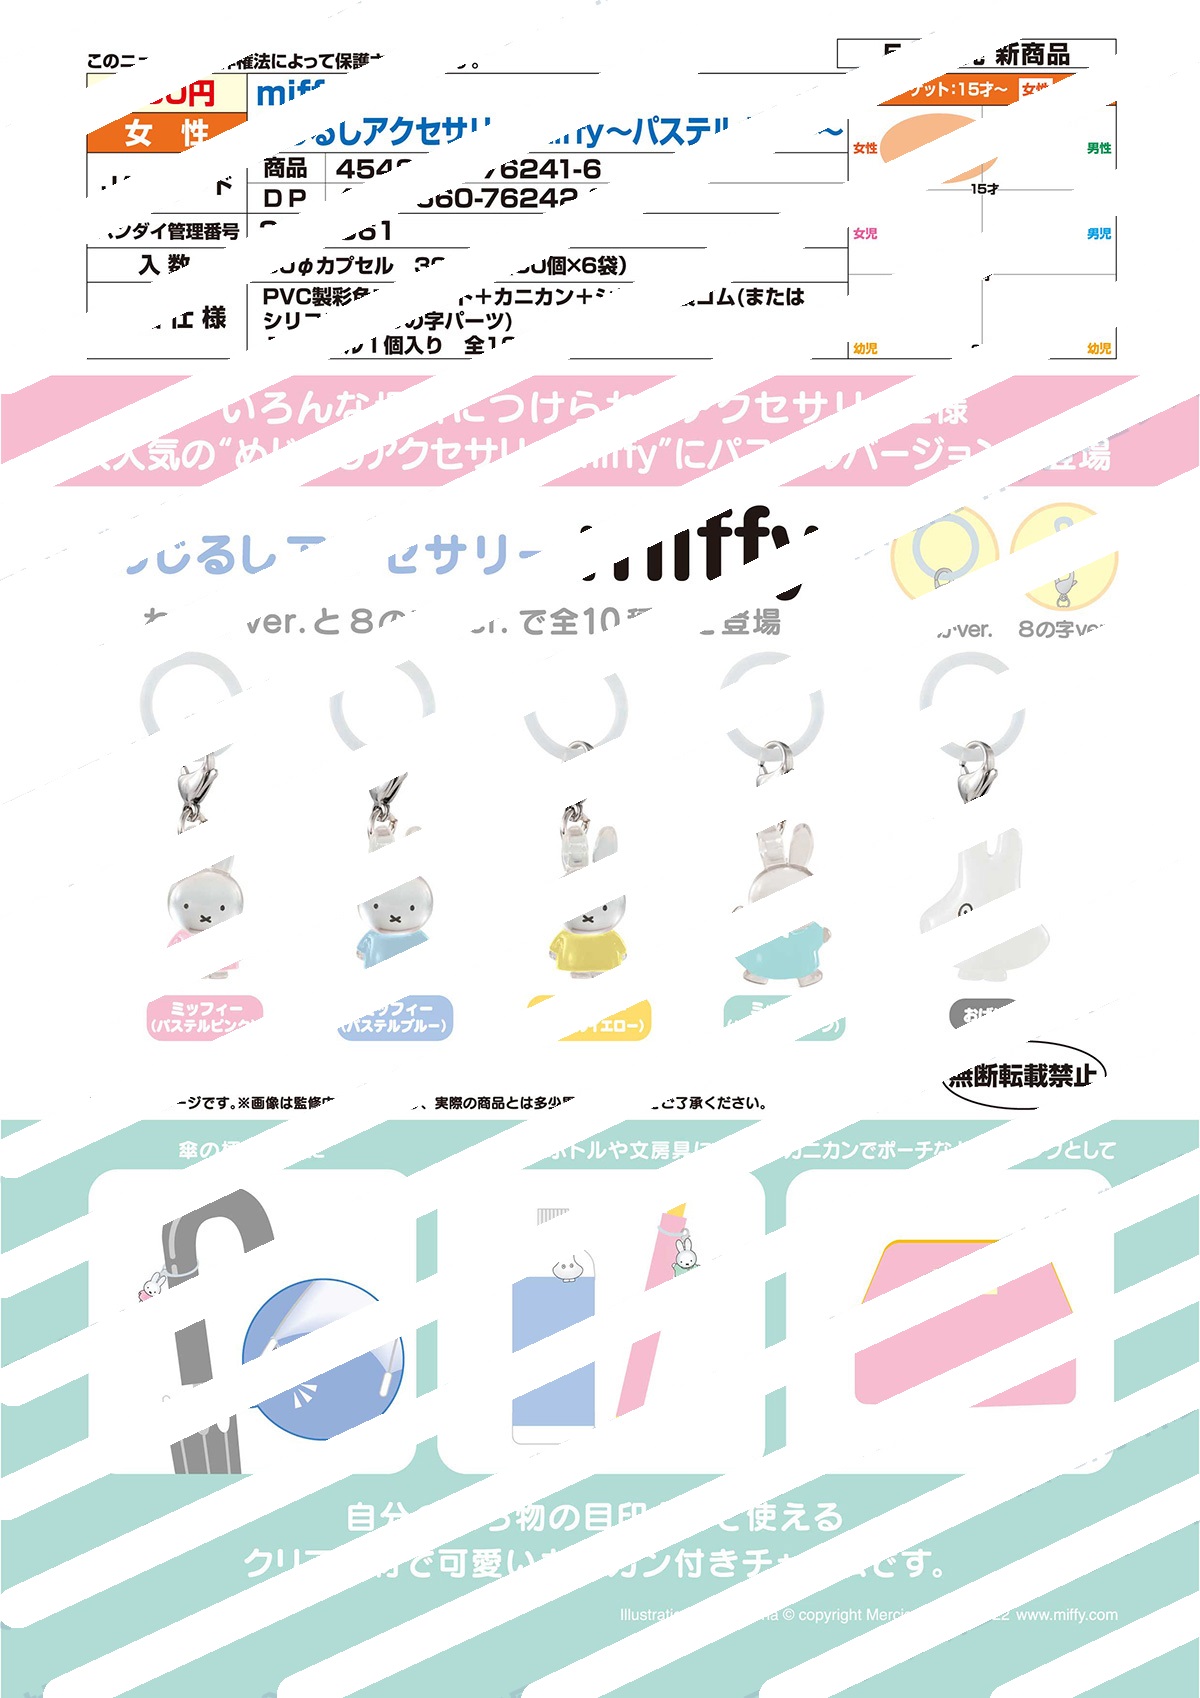 【A】200日元扭蛋 米菲兔 标志小挂件 全10种 (1袋50个) 762416